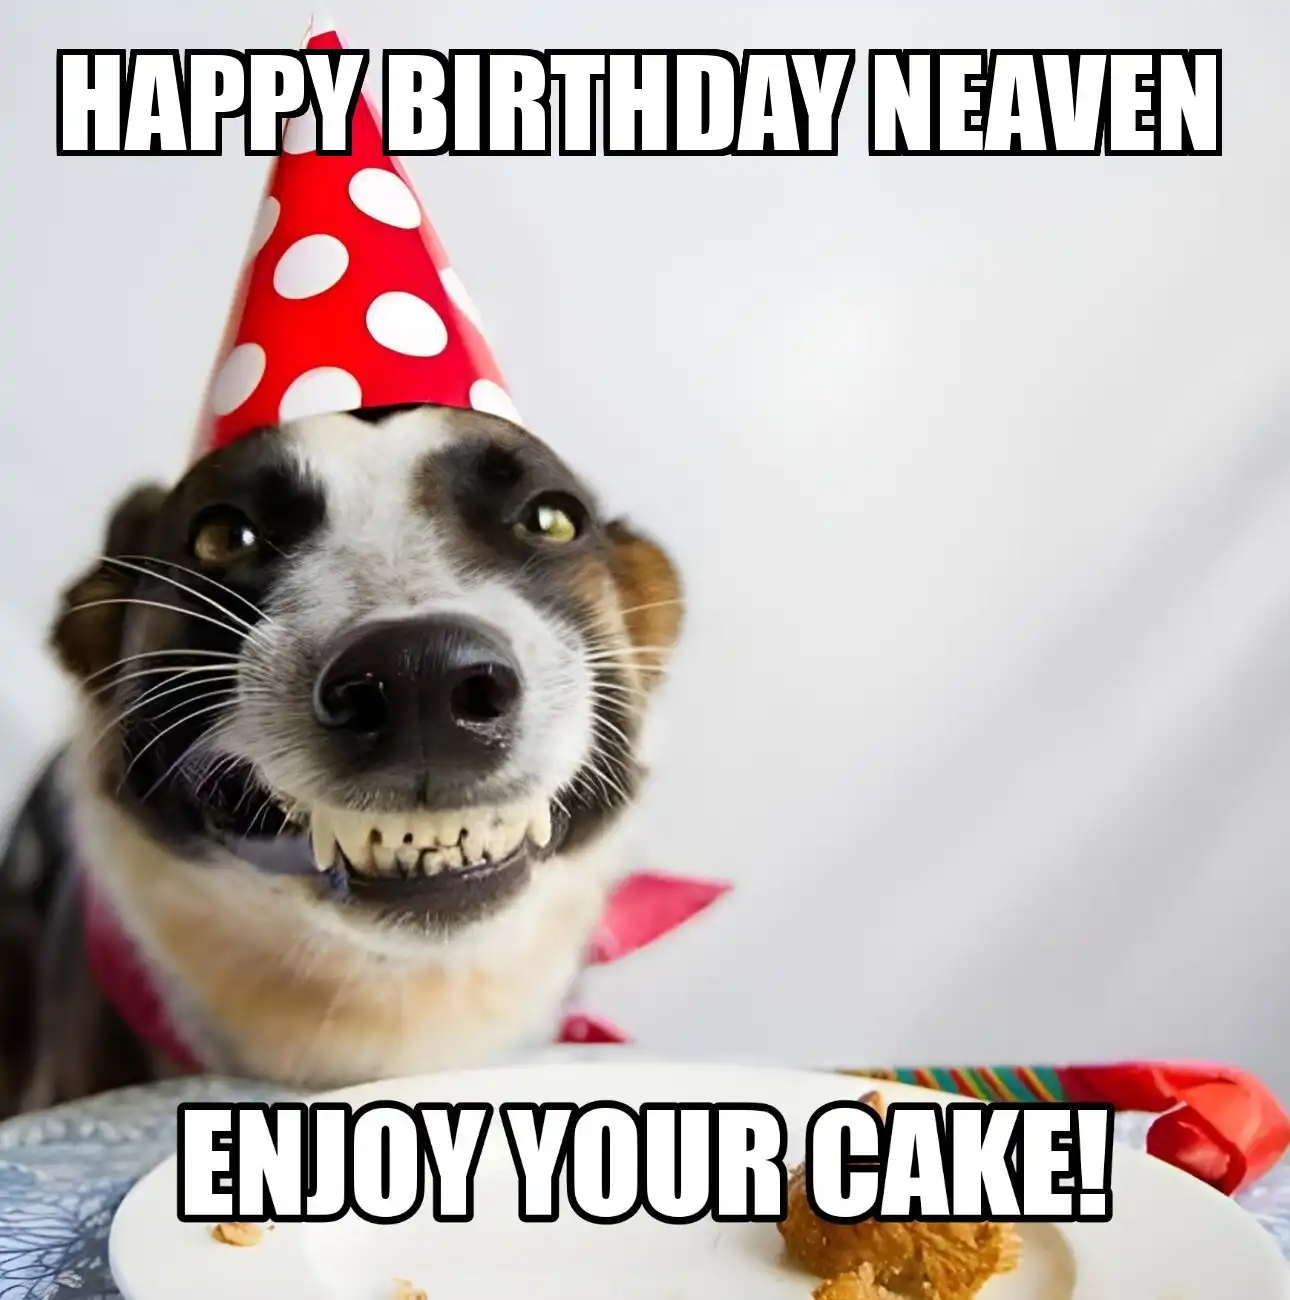 Happy Birthday Neaven Enjoy Your Cake Dog Meme